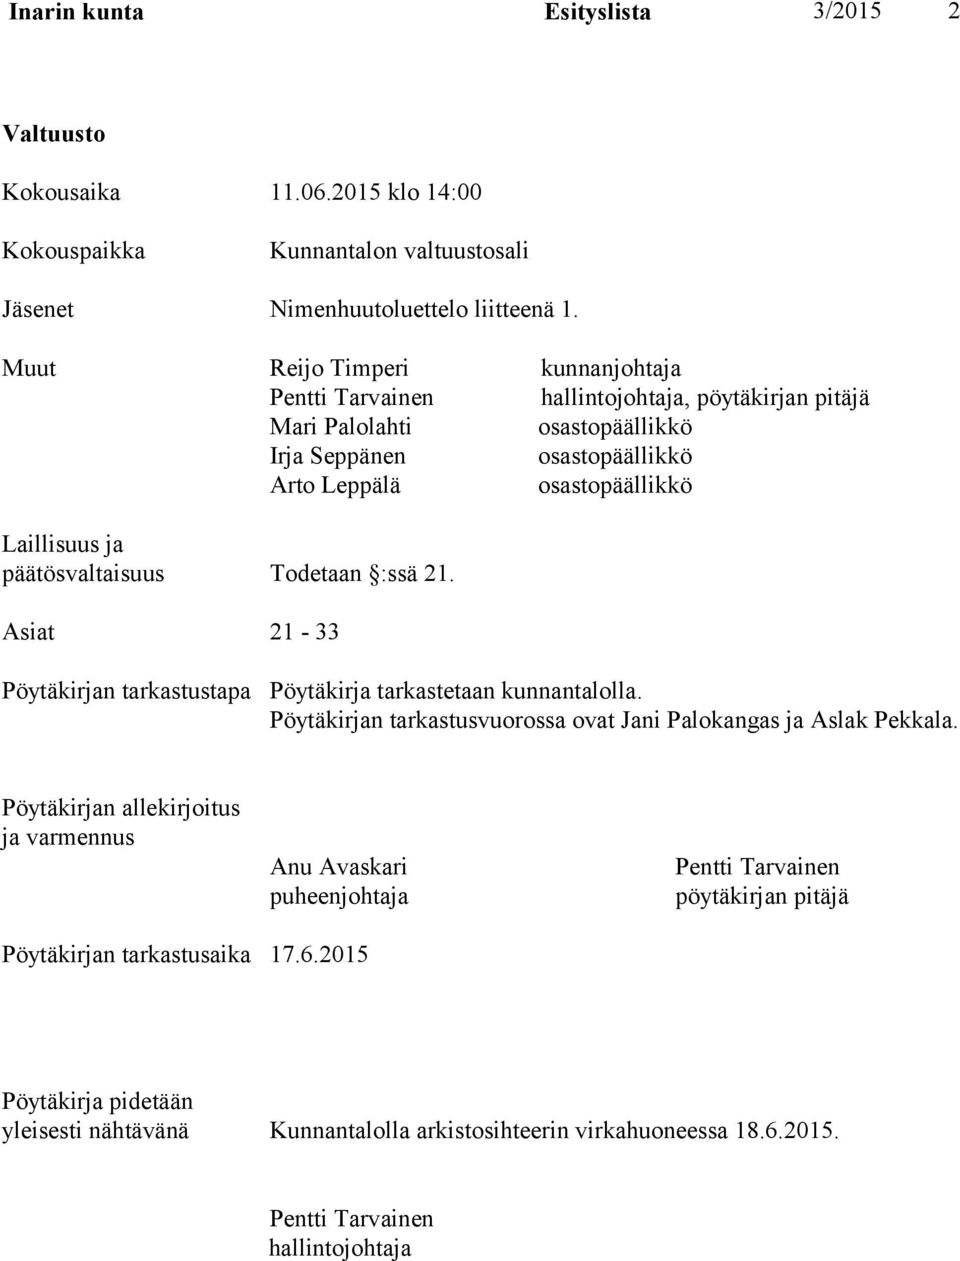 päätösvaltaisuus Todetaan :ssä 21. Asiat 21-33 Pöytäkirjan tarkastustapa Pöytäkirja tarkastetaan kunnantalolla. Pöytäkirjan tarkastusvuorossa ovat Jani Palokangas ja Aslak Pekkala.